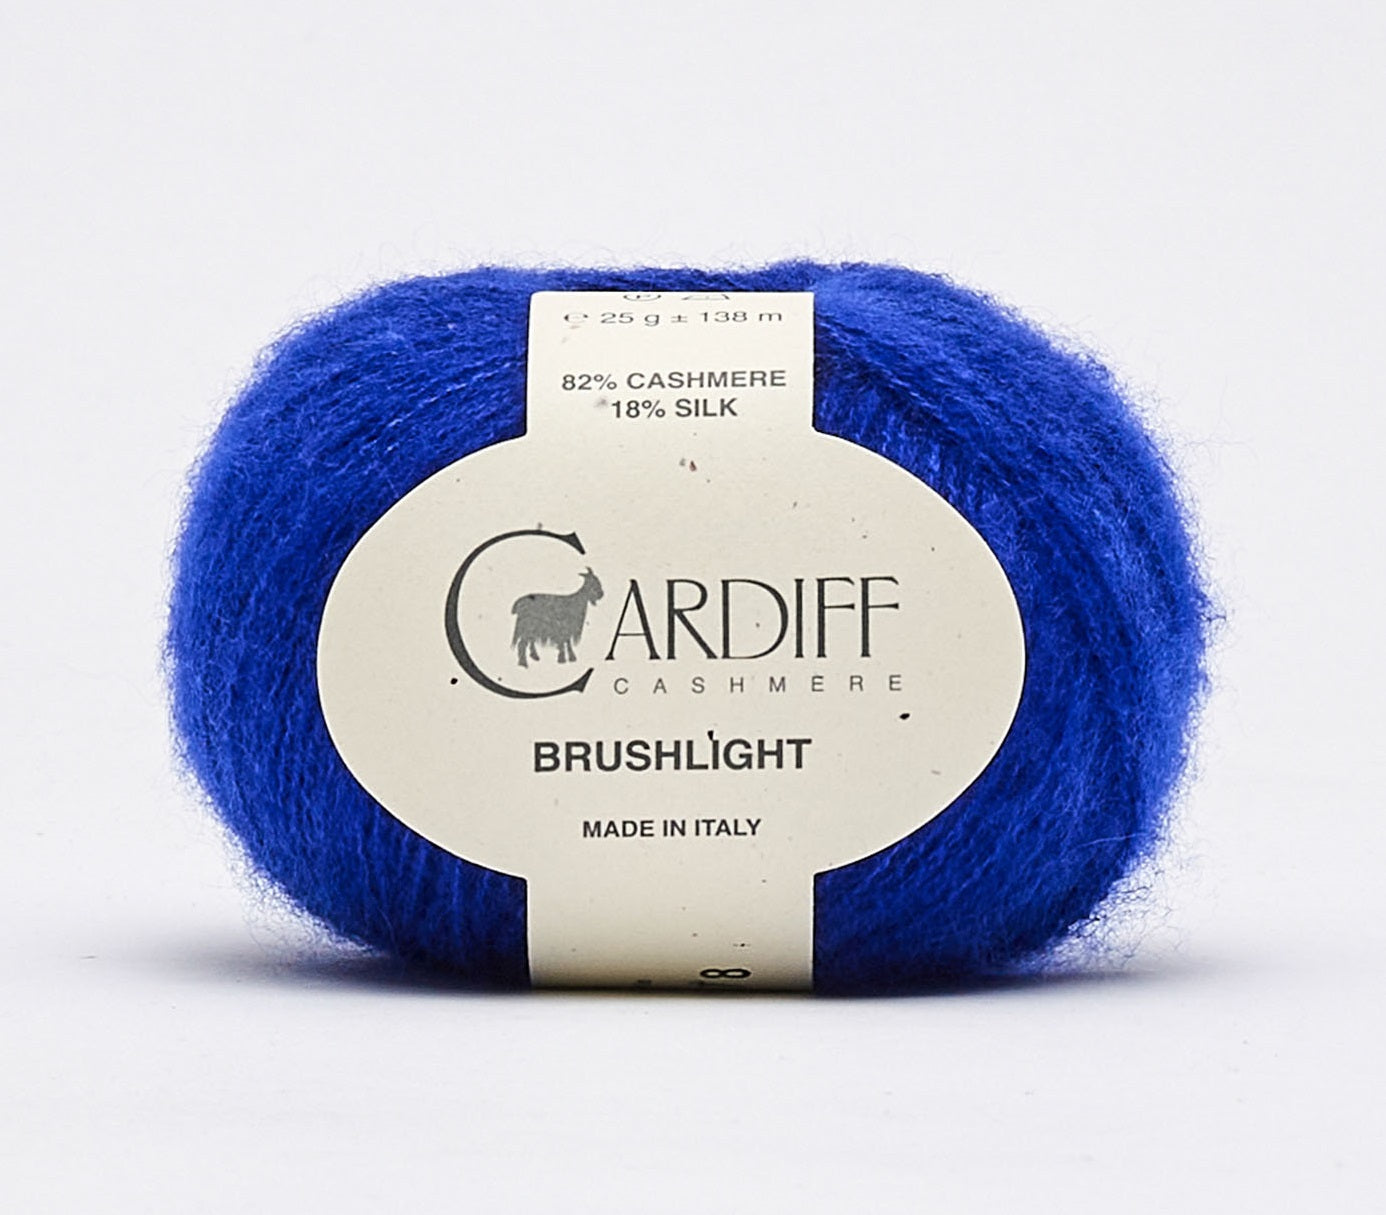 cardiff cashmere brushlight